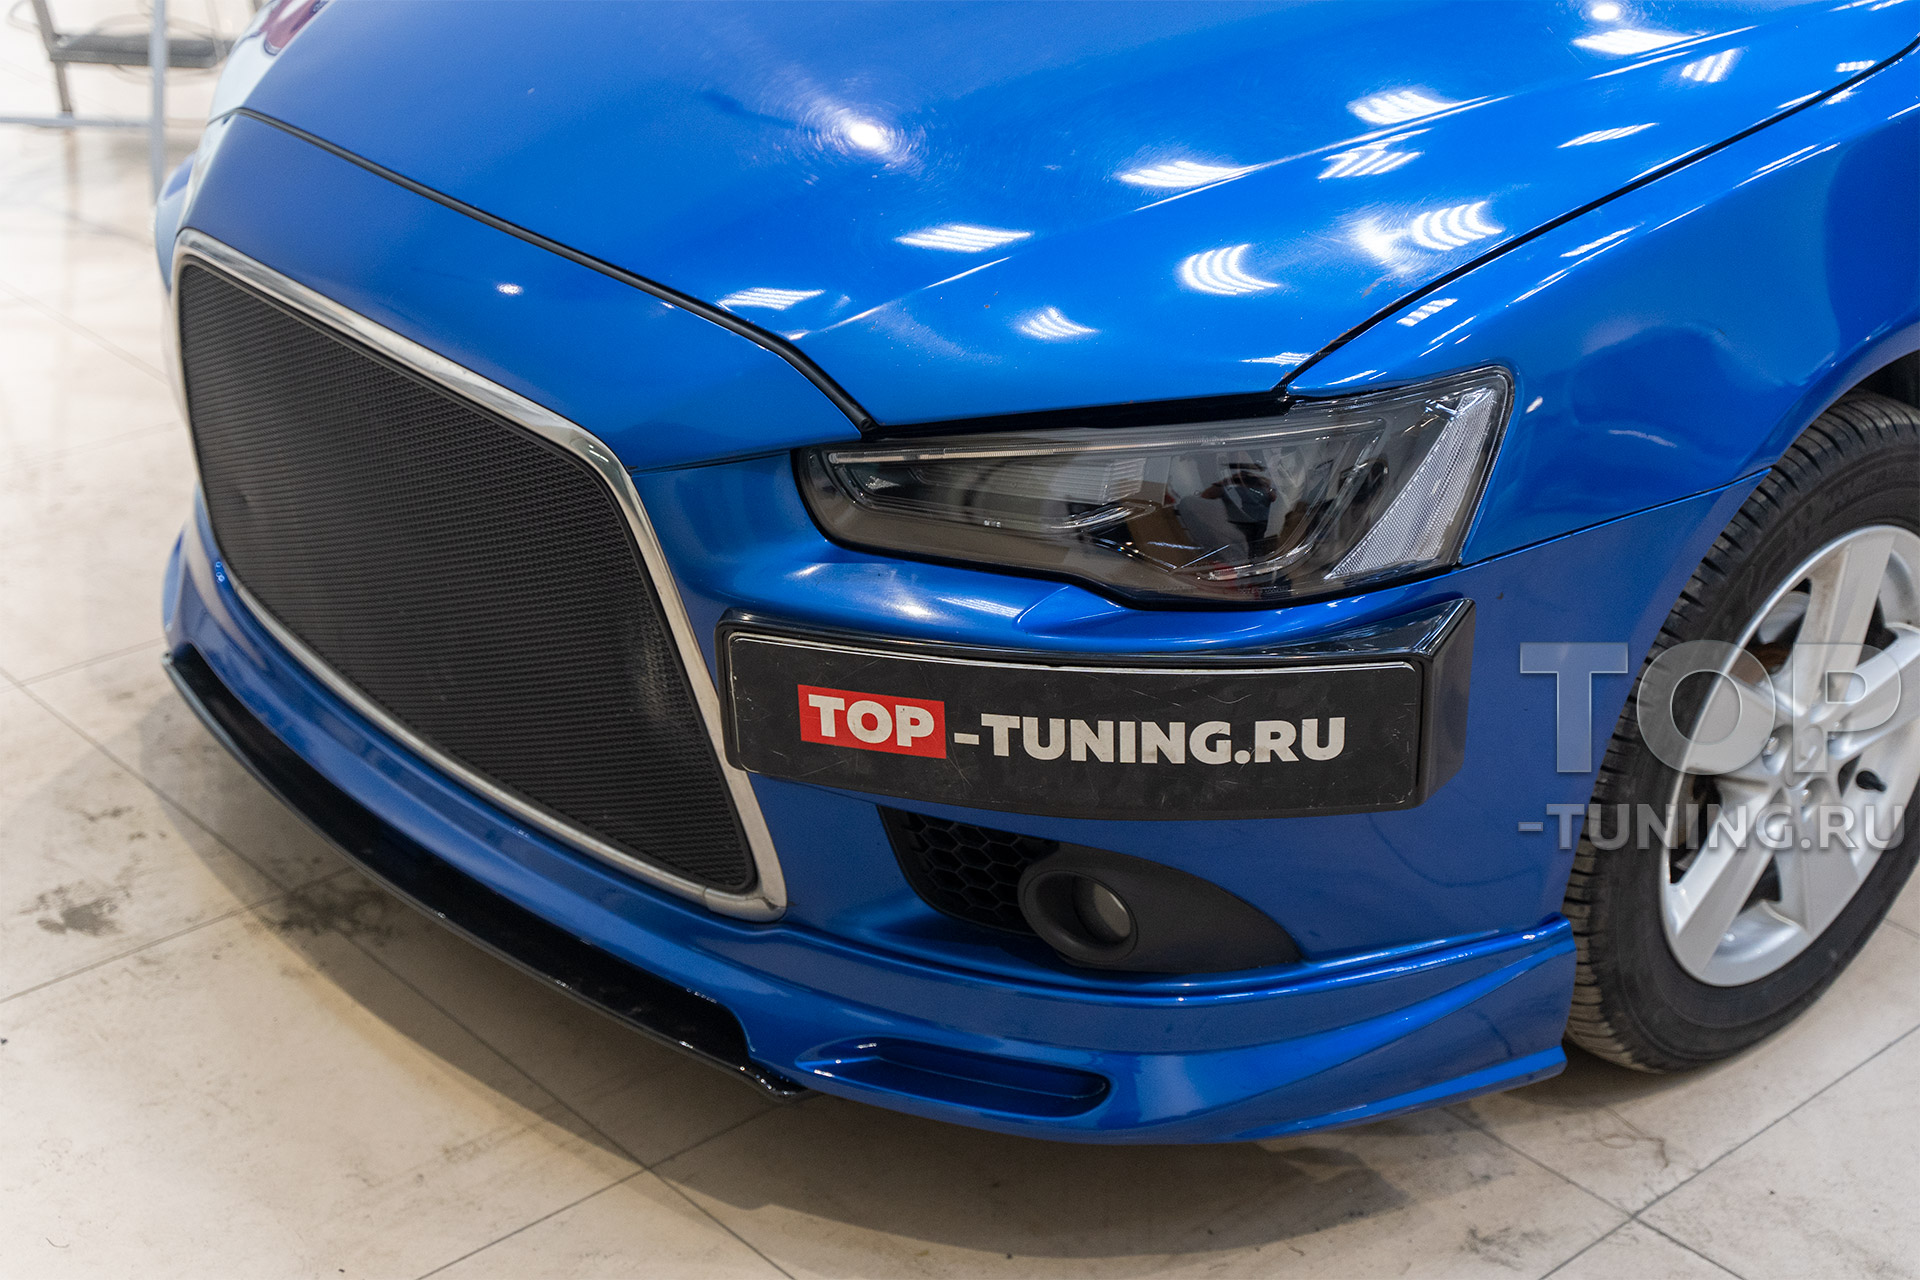 Новая внешность и мощный свет под ключ, для синего Mitsubishi Lancer X в Top Tuning Москва 